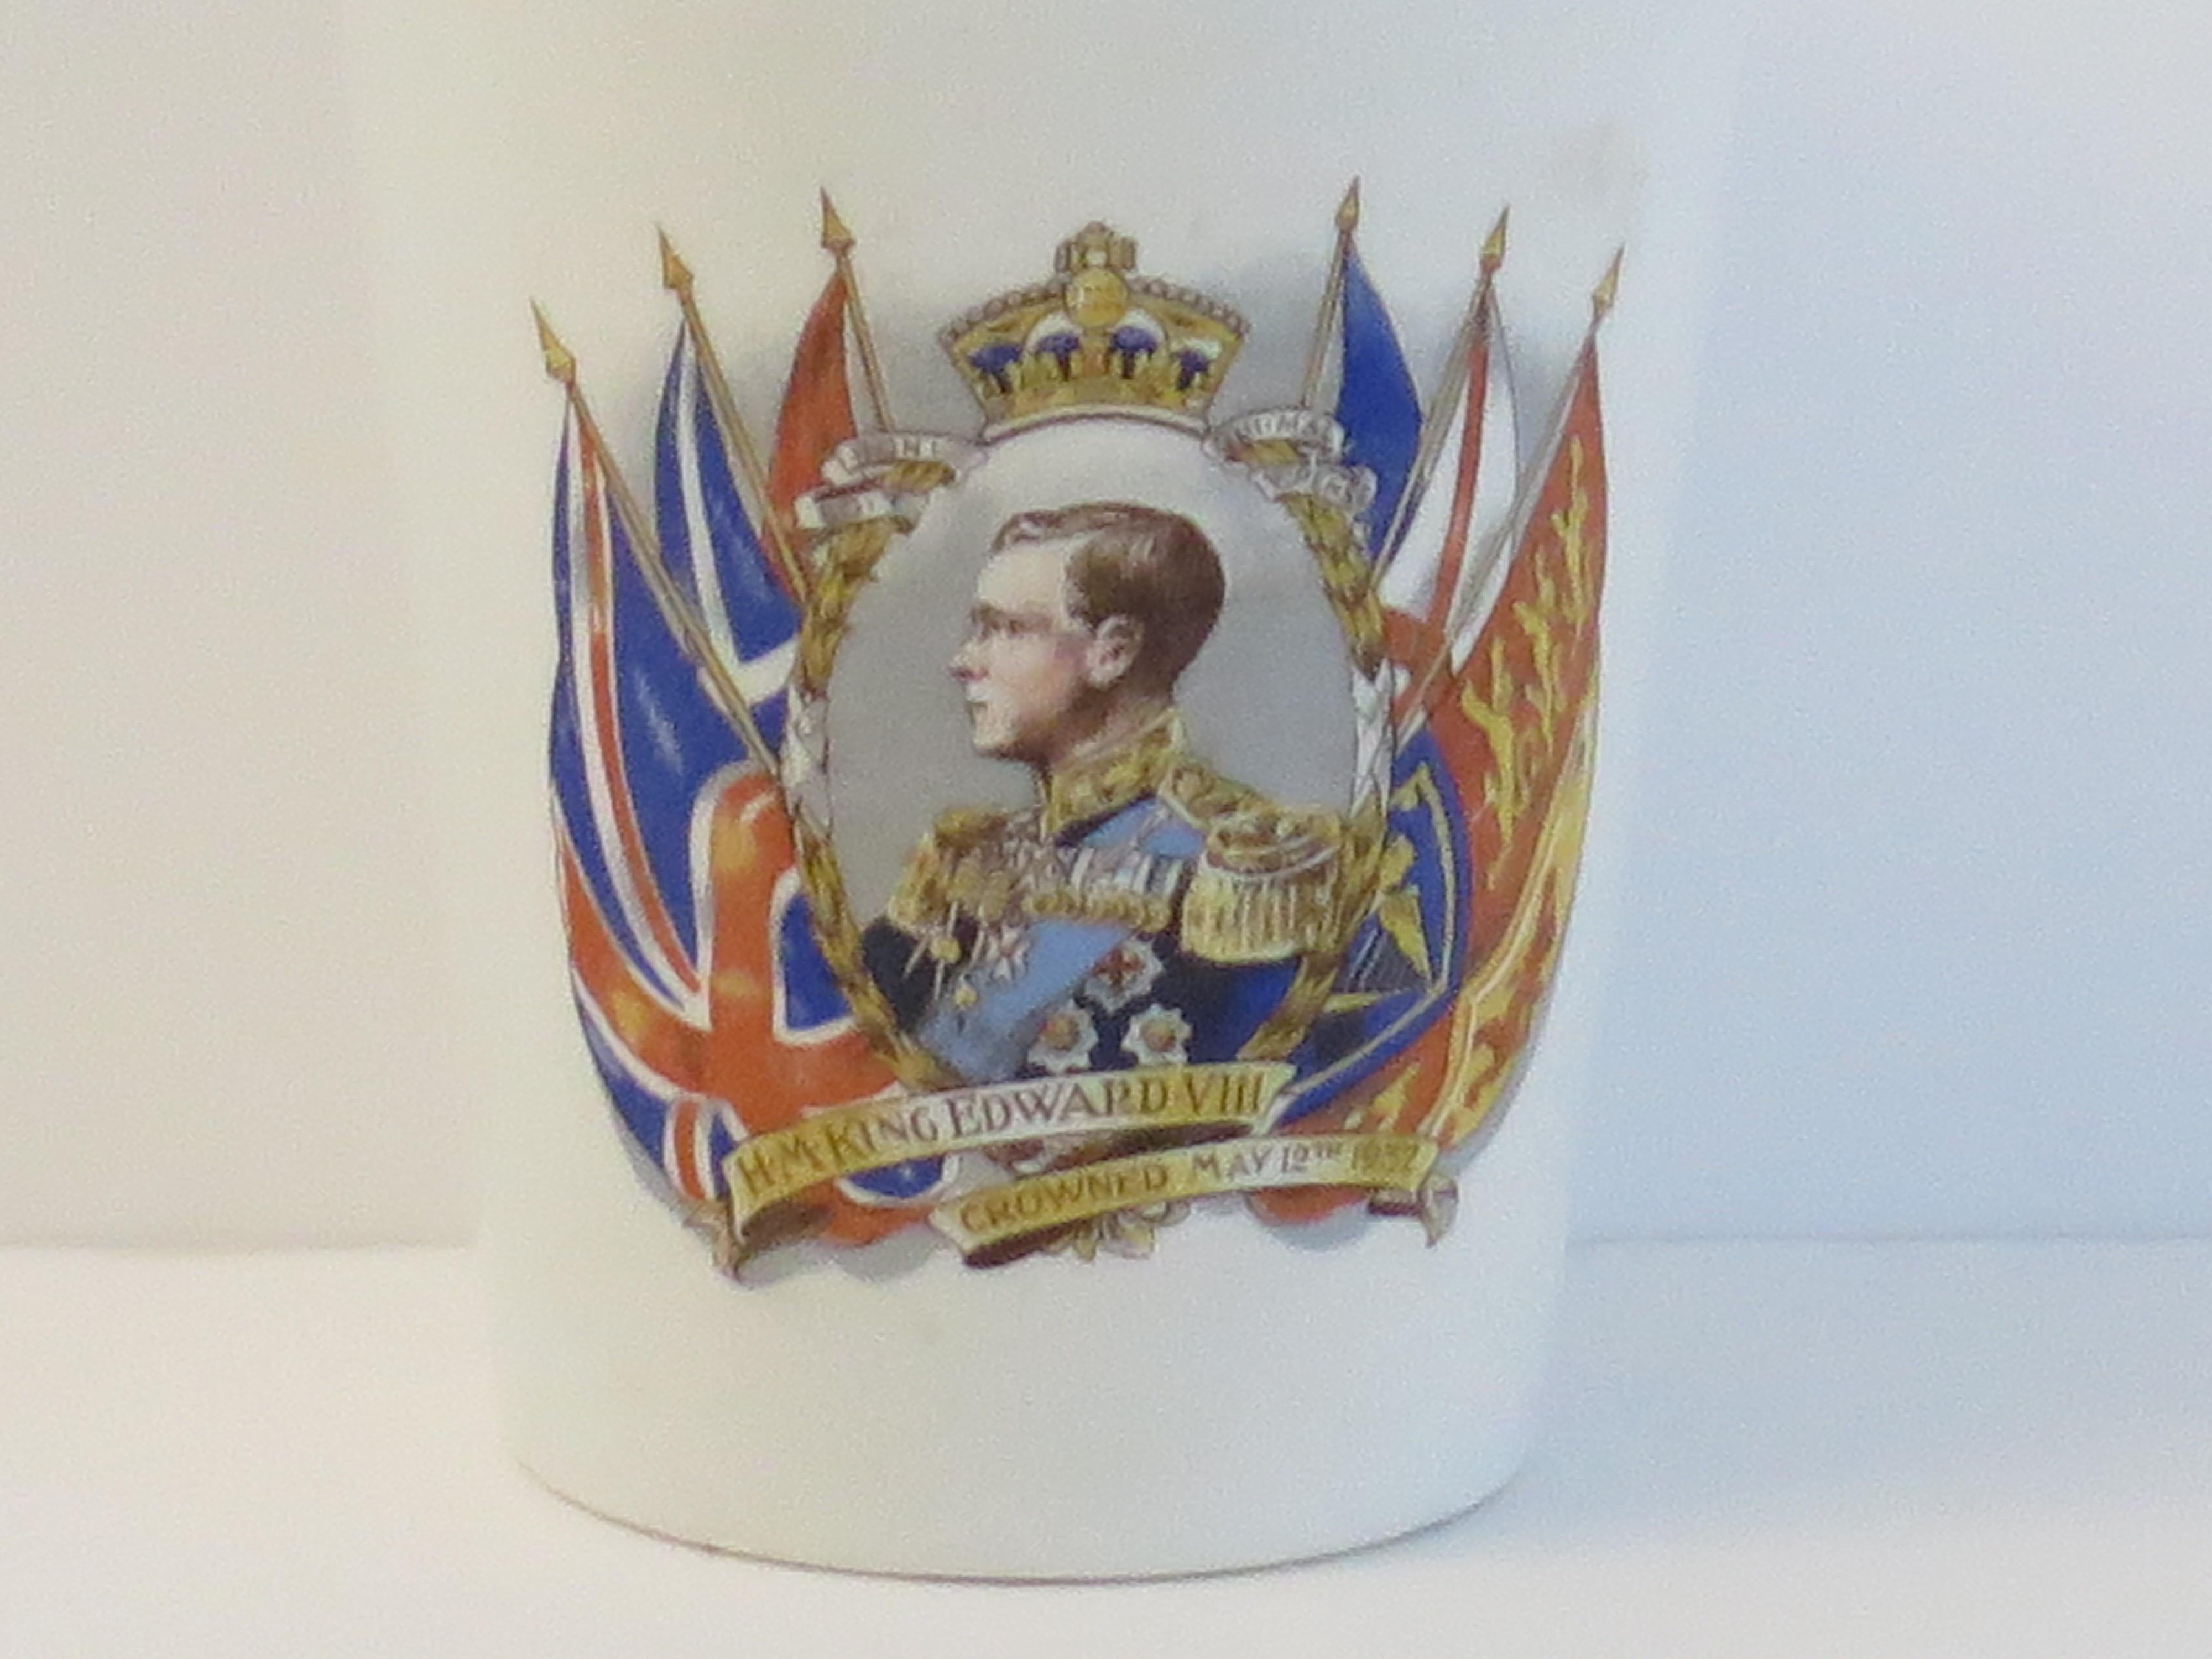 Il s'agit d'un gobelet commémoratif royal en faïence (poterie) célébrant le couronnement prévu du roi Édouard V111e le 12 mai 1937.

Ce gobelet ou cette tasse effilée aurait été fabriqué par l'une des nombreuses poteries du Staffordshire en